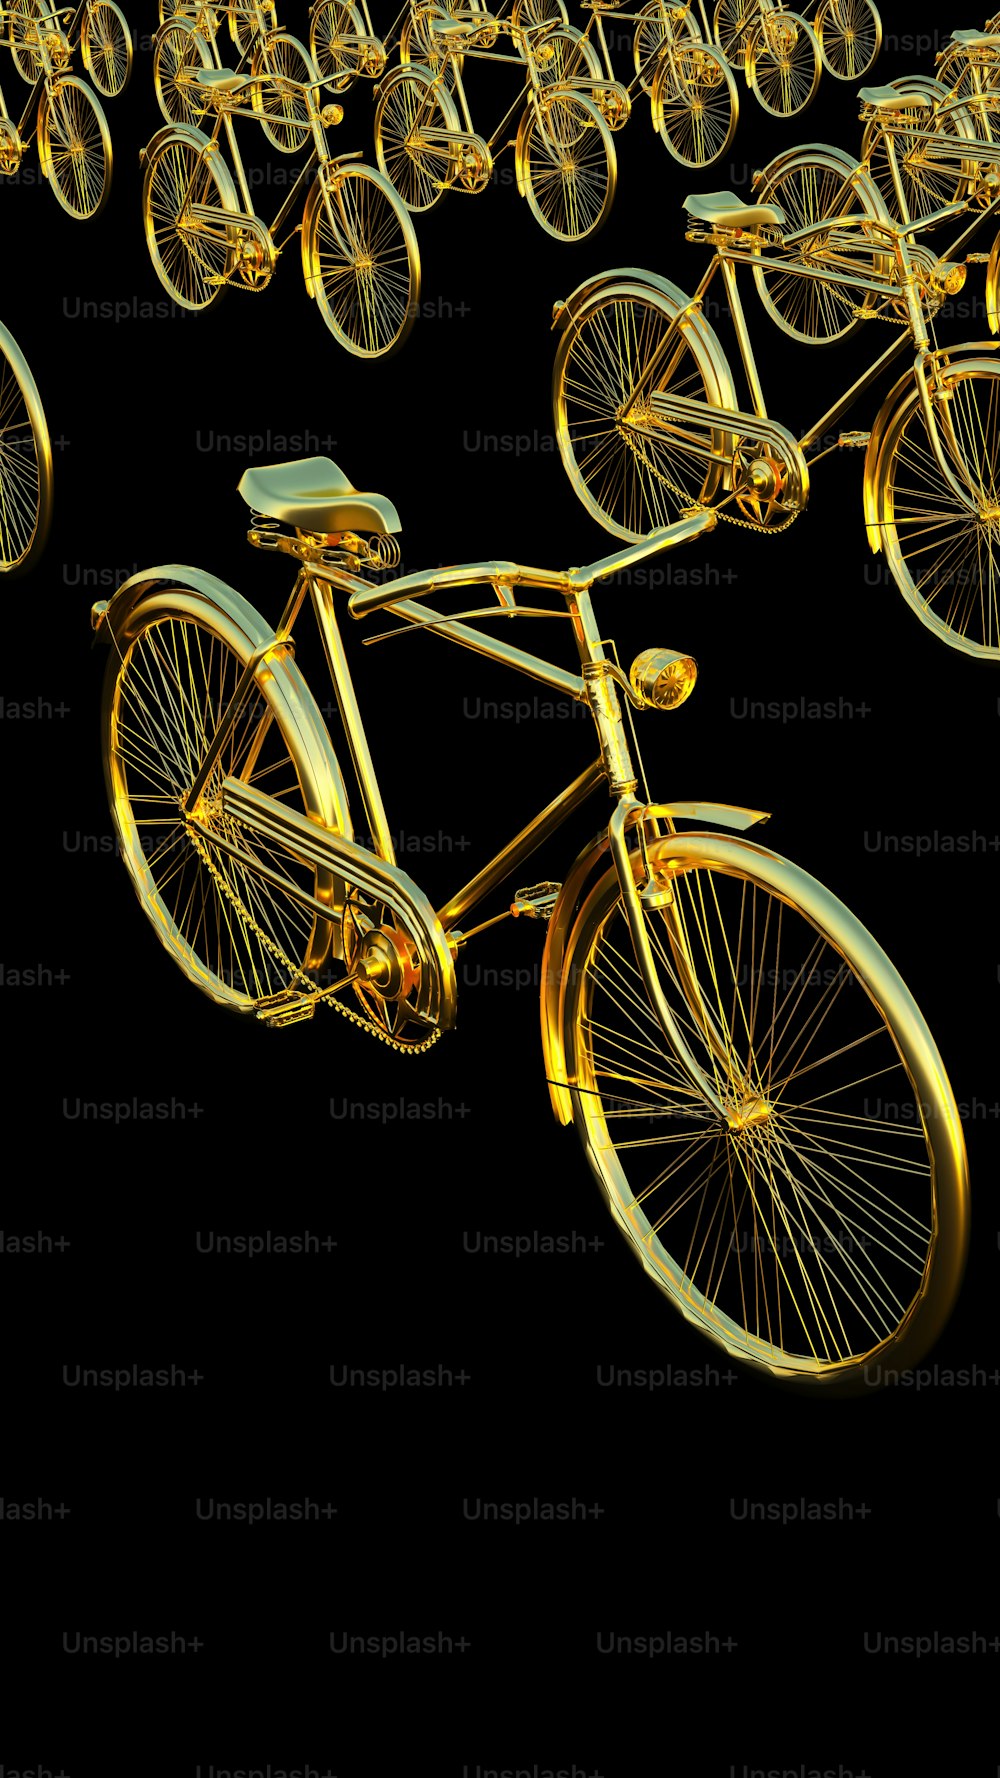 Un montón de bicicletas que son de color dorado